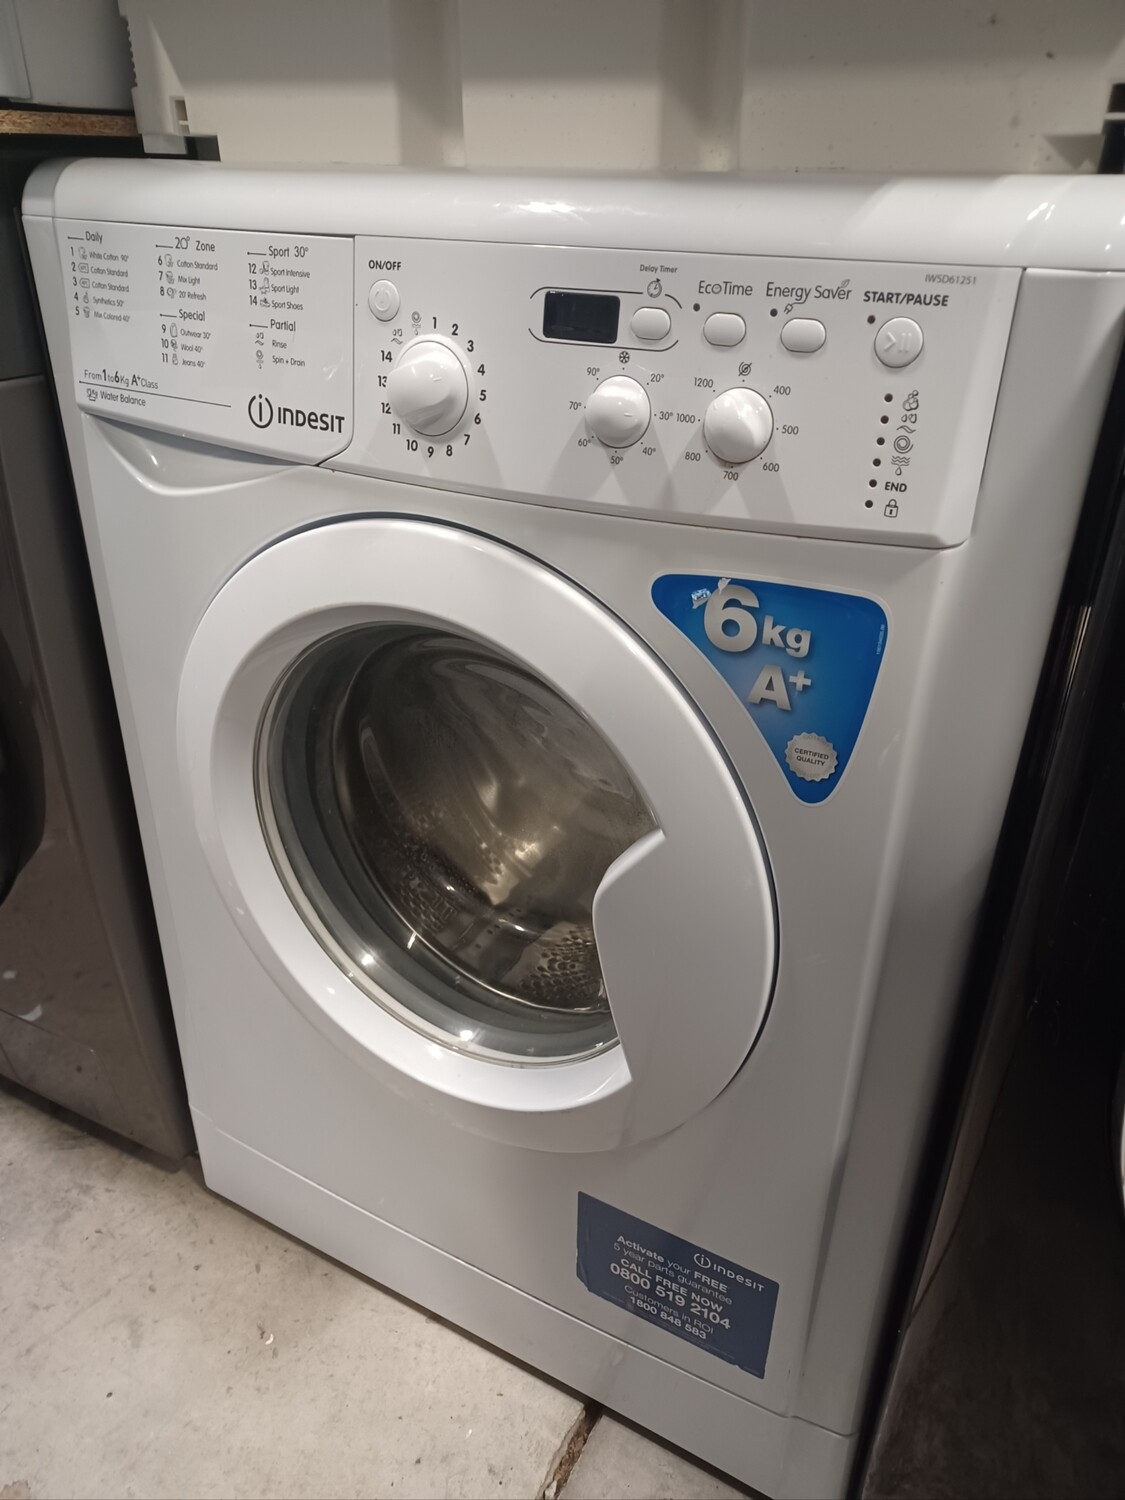 Indesit IWSD61251 6kg Load, 1200 Spin Washing Machine Slim Depth - White - Refurbished - 6 Month Guarantee